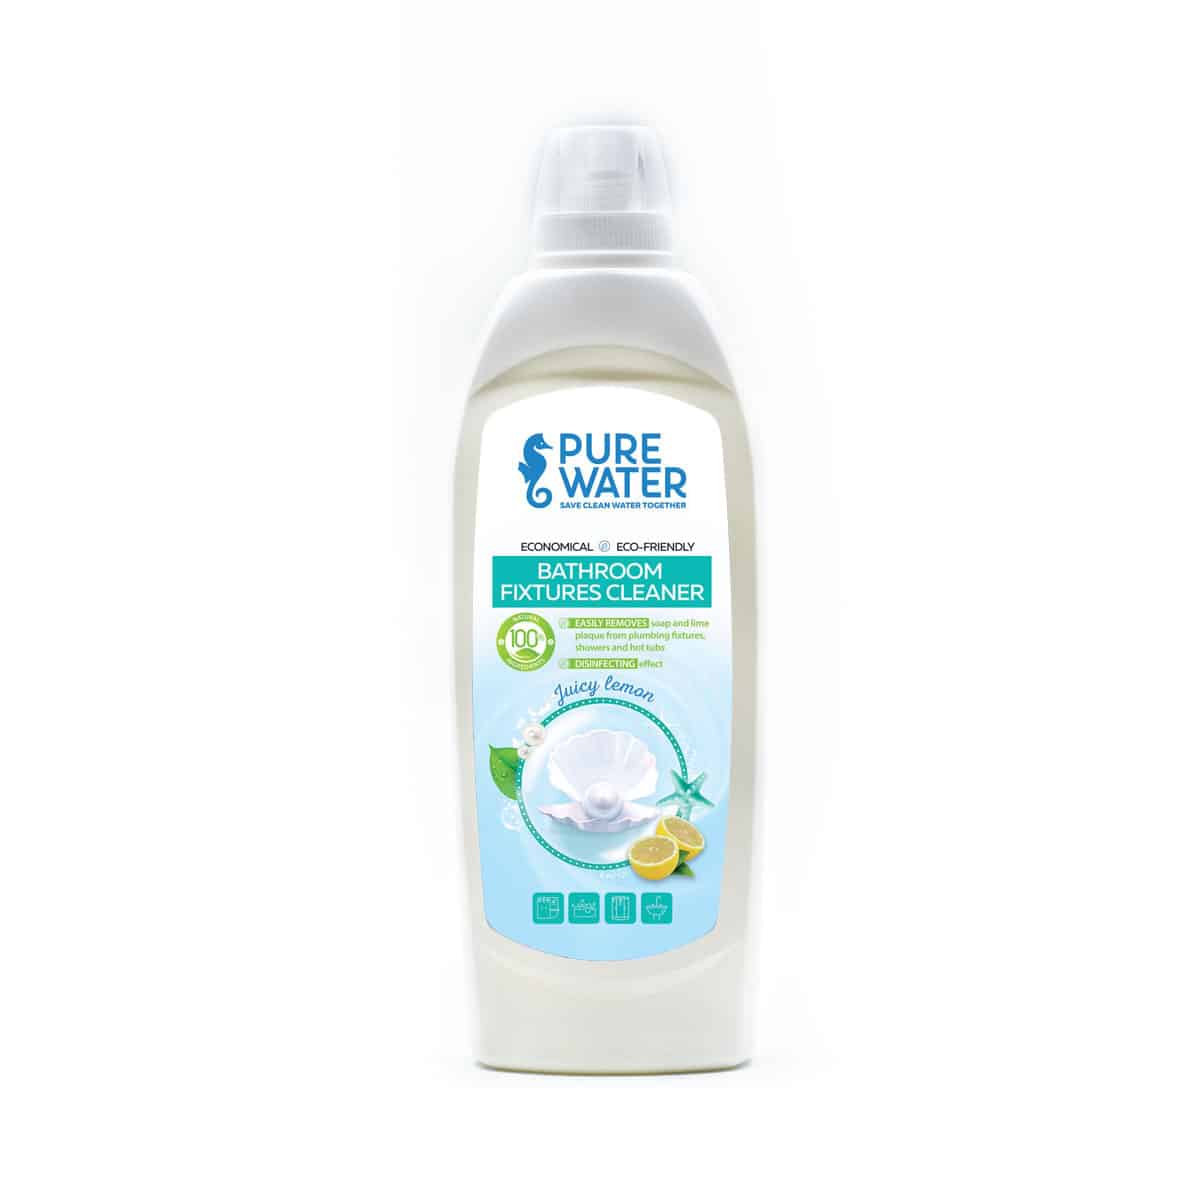 Bathroom fixtures cleaner Juicy Lemon by Pure Water 500 ml